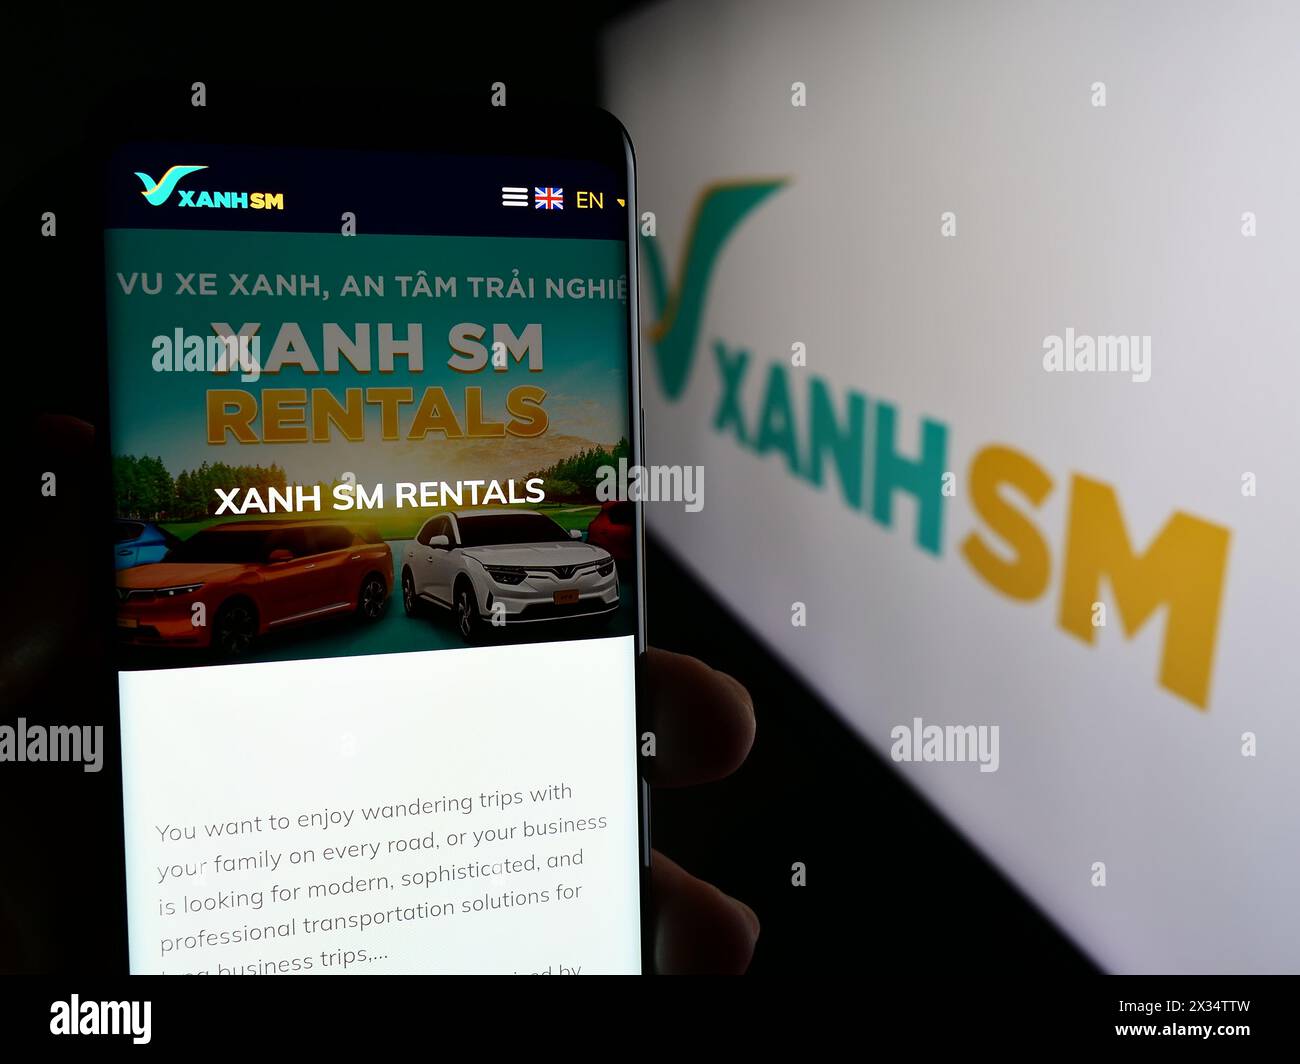 Persona che detiene un cellulare con pagina web della società vietnamita di mobilità Xanh SM davanti al logo aziendale. Messa a fuoco al centro del display del telefono. Foto Stock